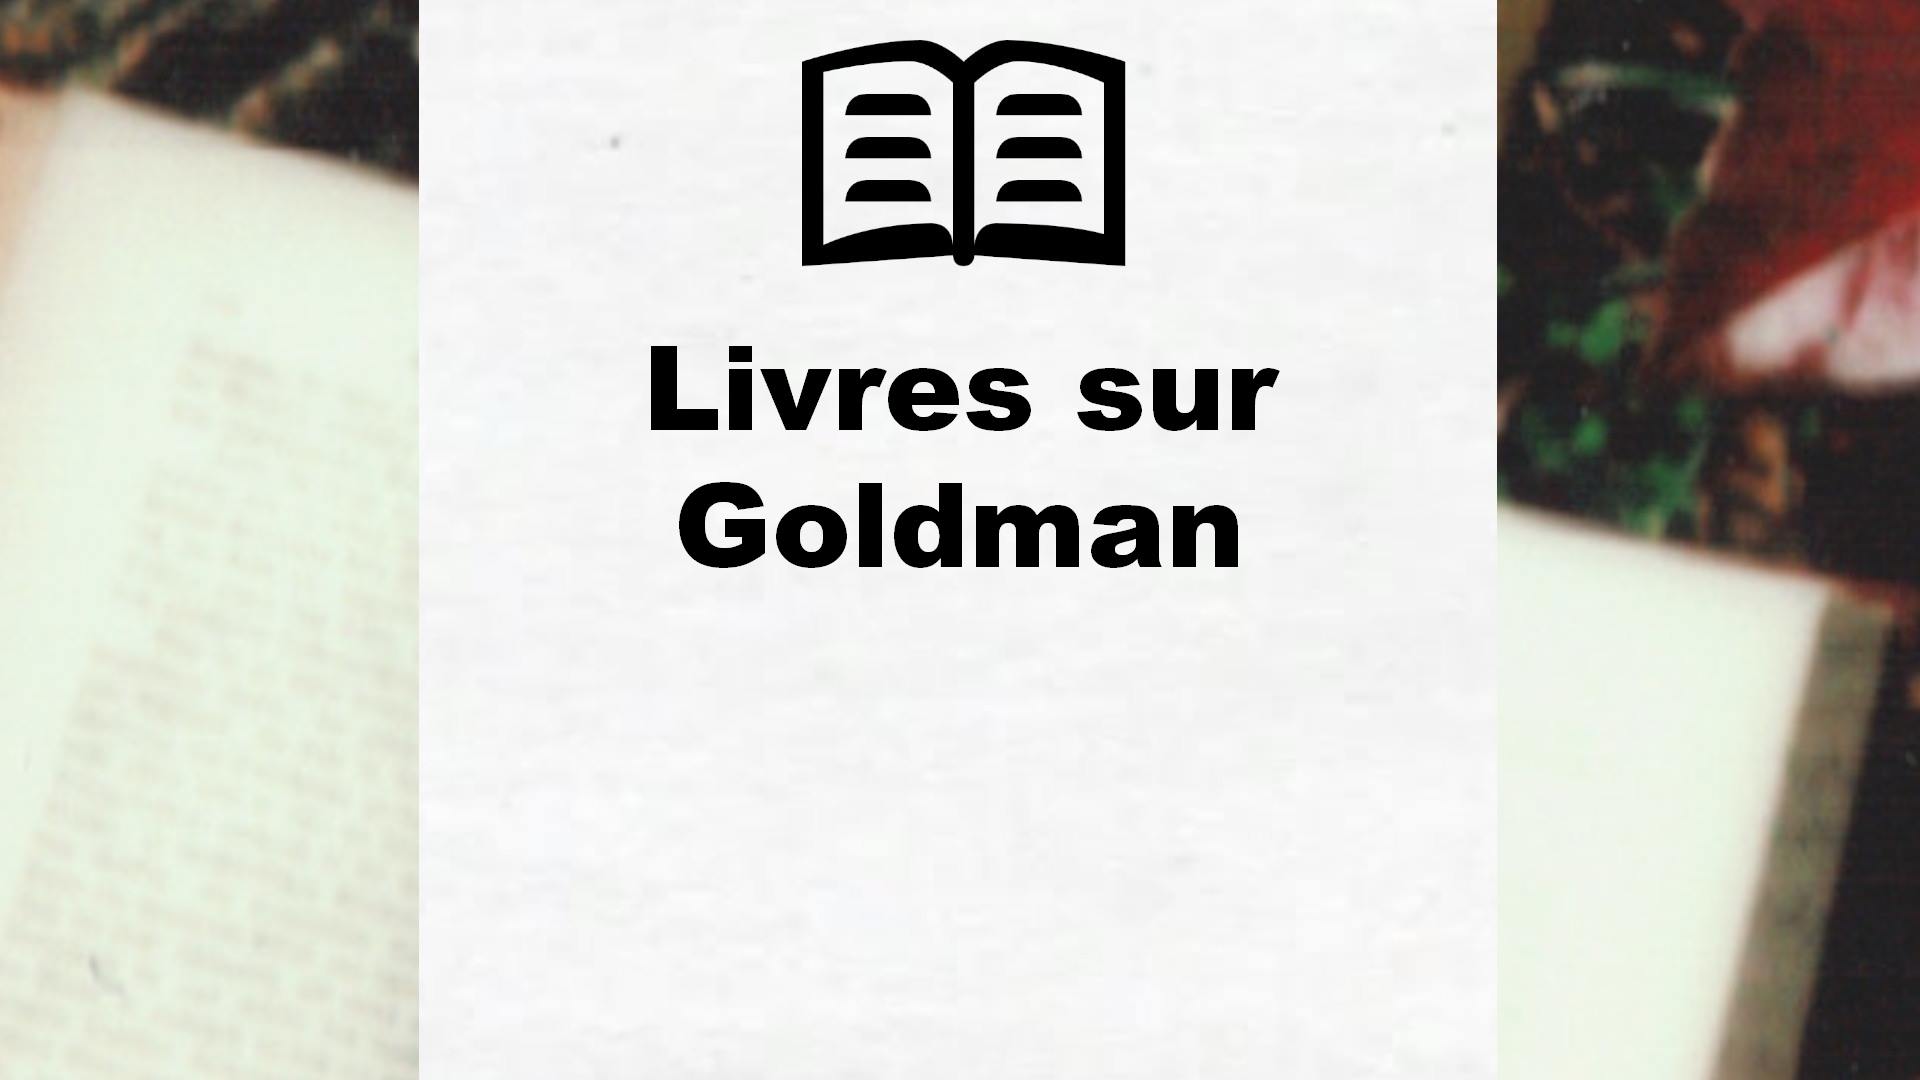 Livres sur Goldman